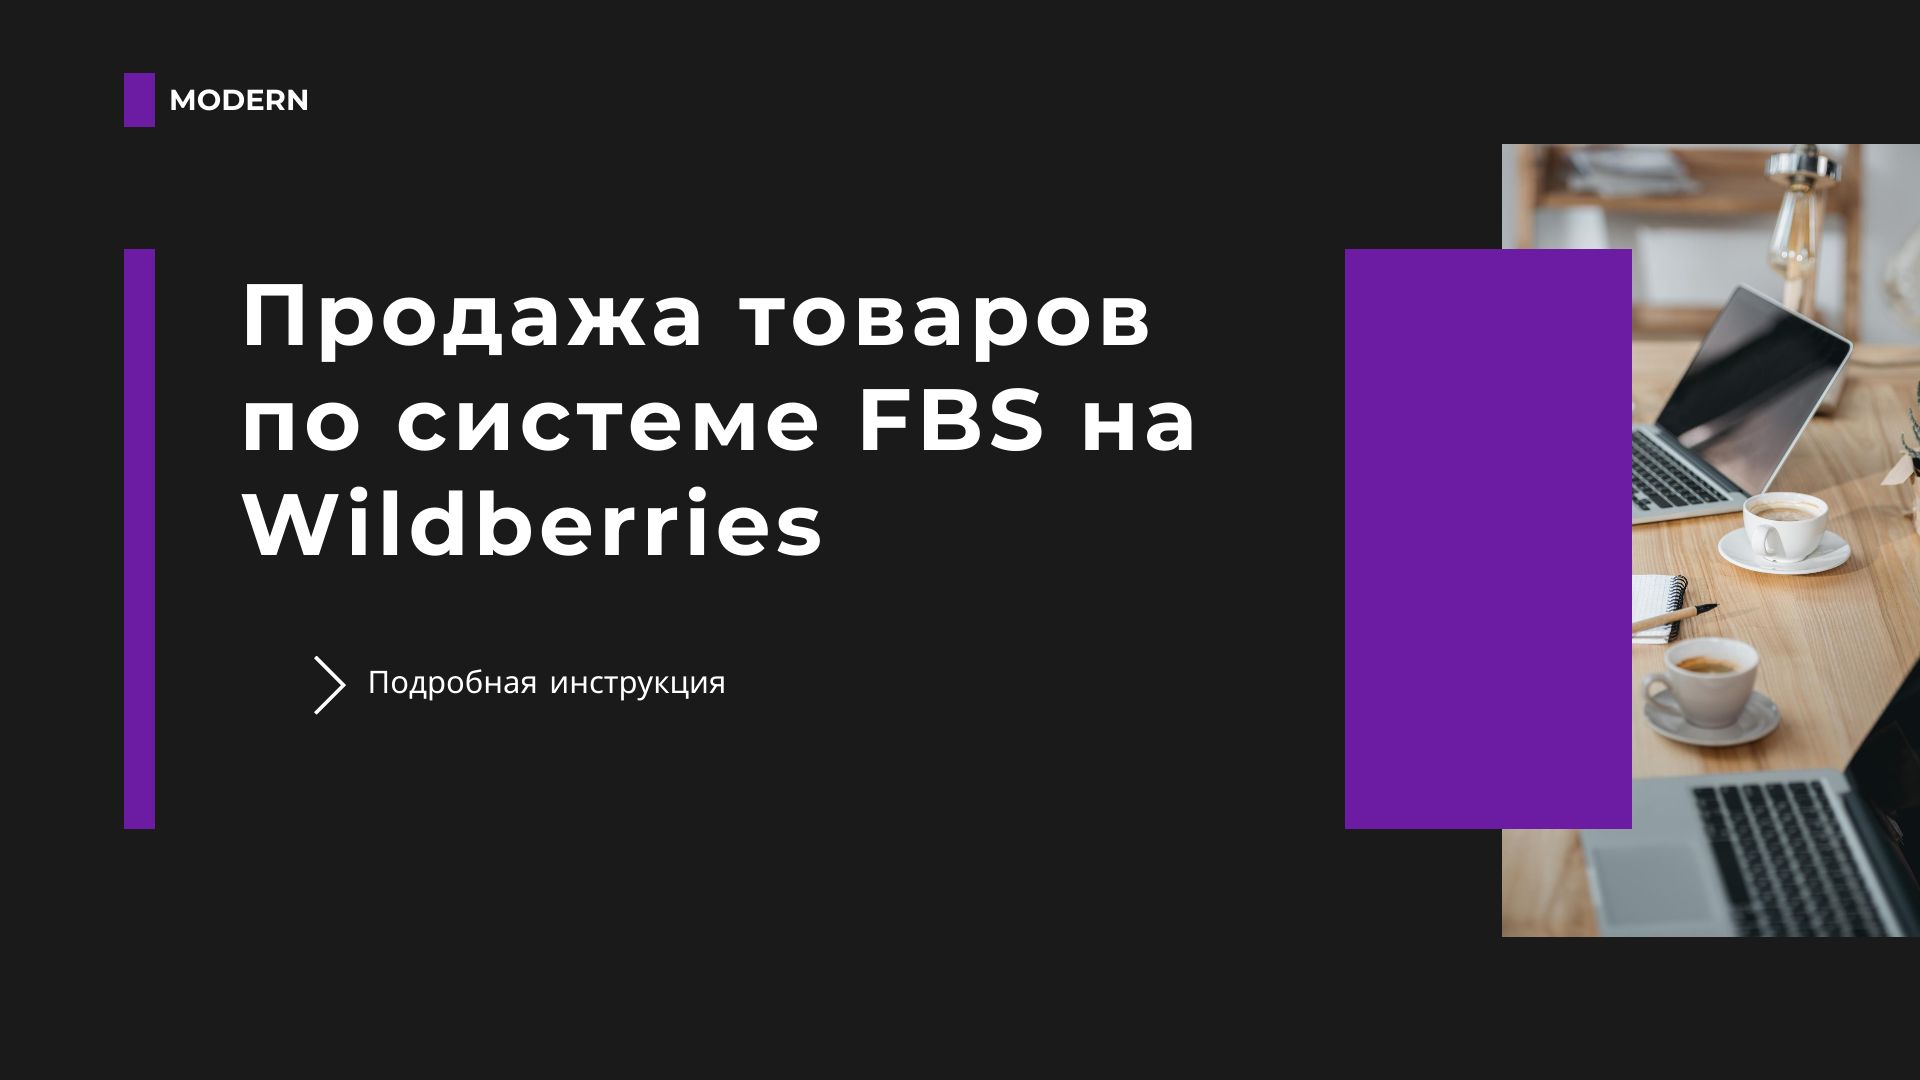 Продажа товаров по системе FBS на Wildberries